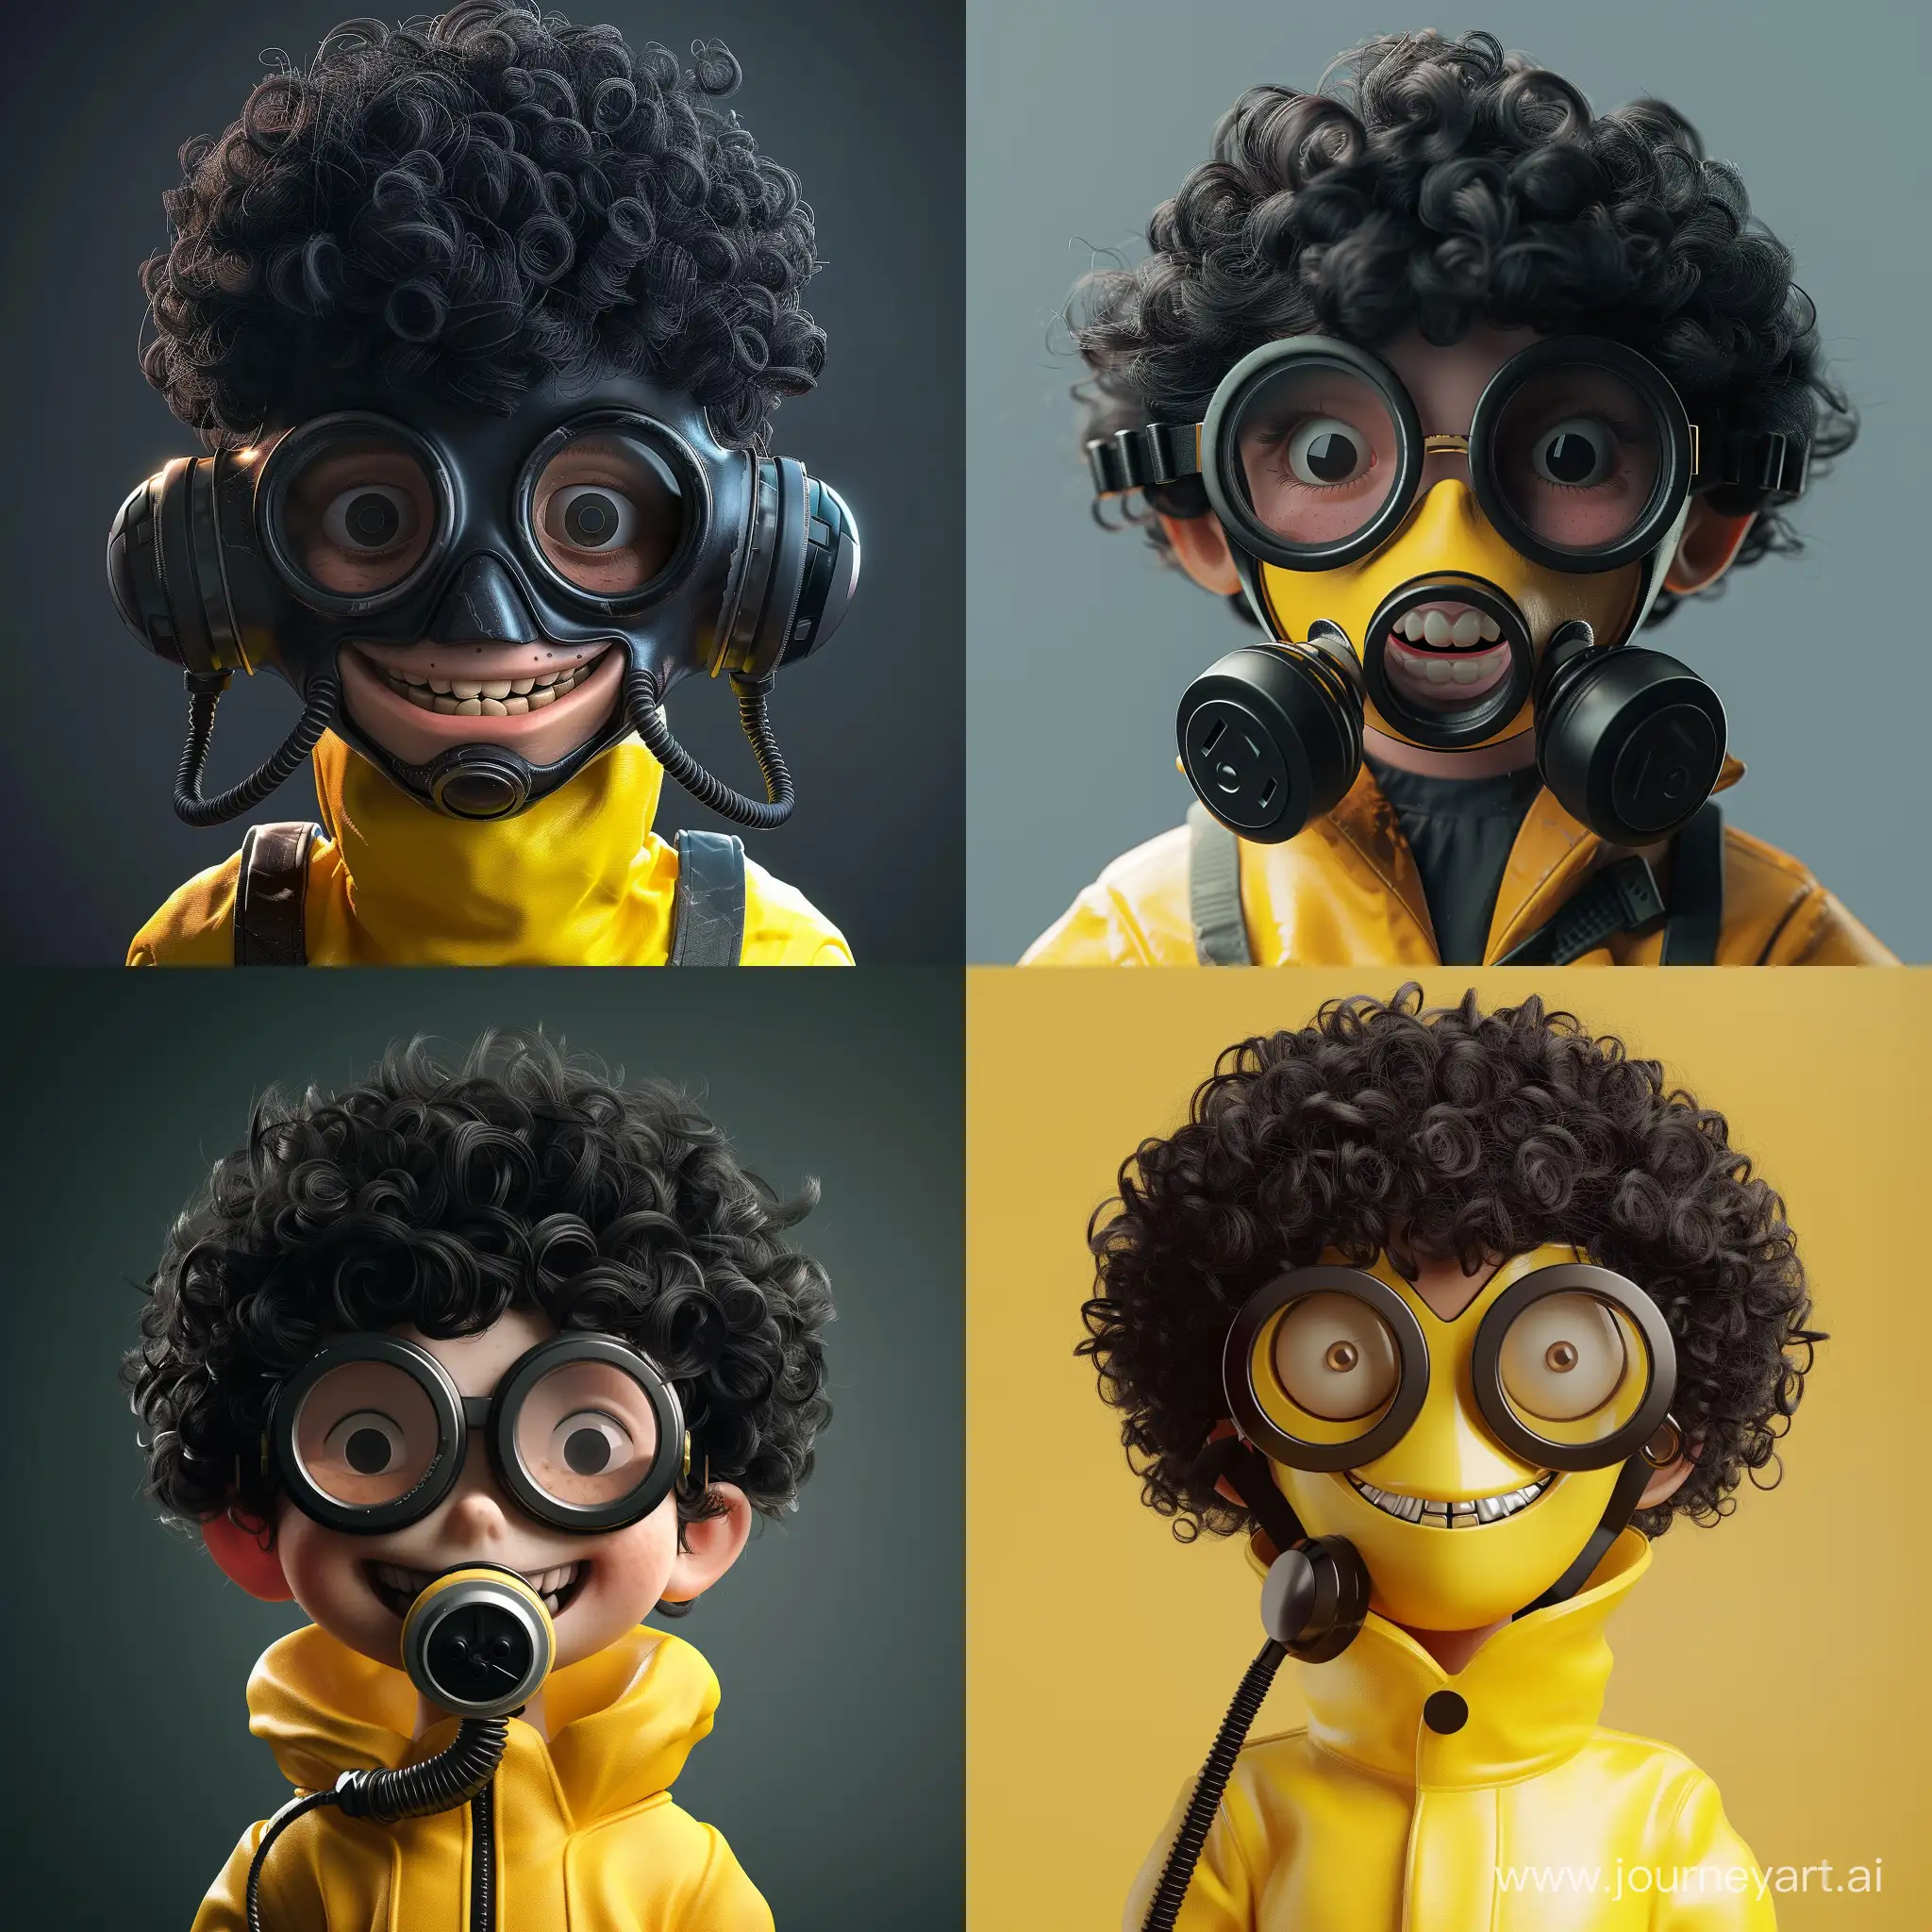 黒髪ミディアムパーマヘア,黒いふちの丸メガネ,笑顔,ガスマスク,男の子,3D,コミック,黄色い防護服